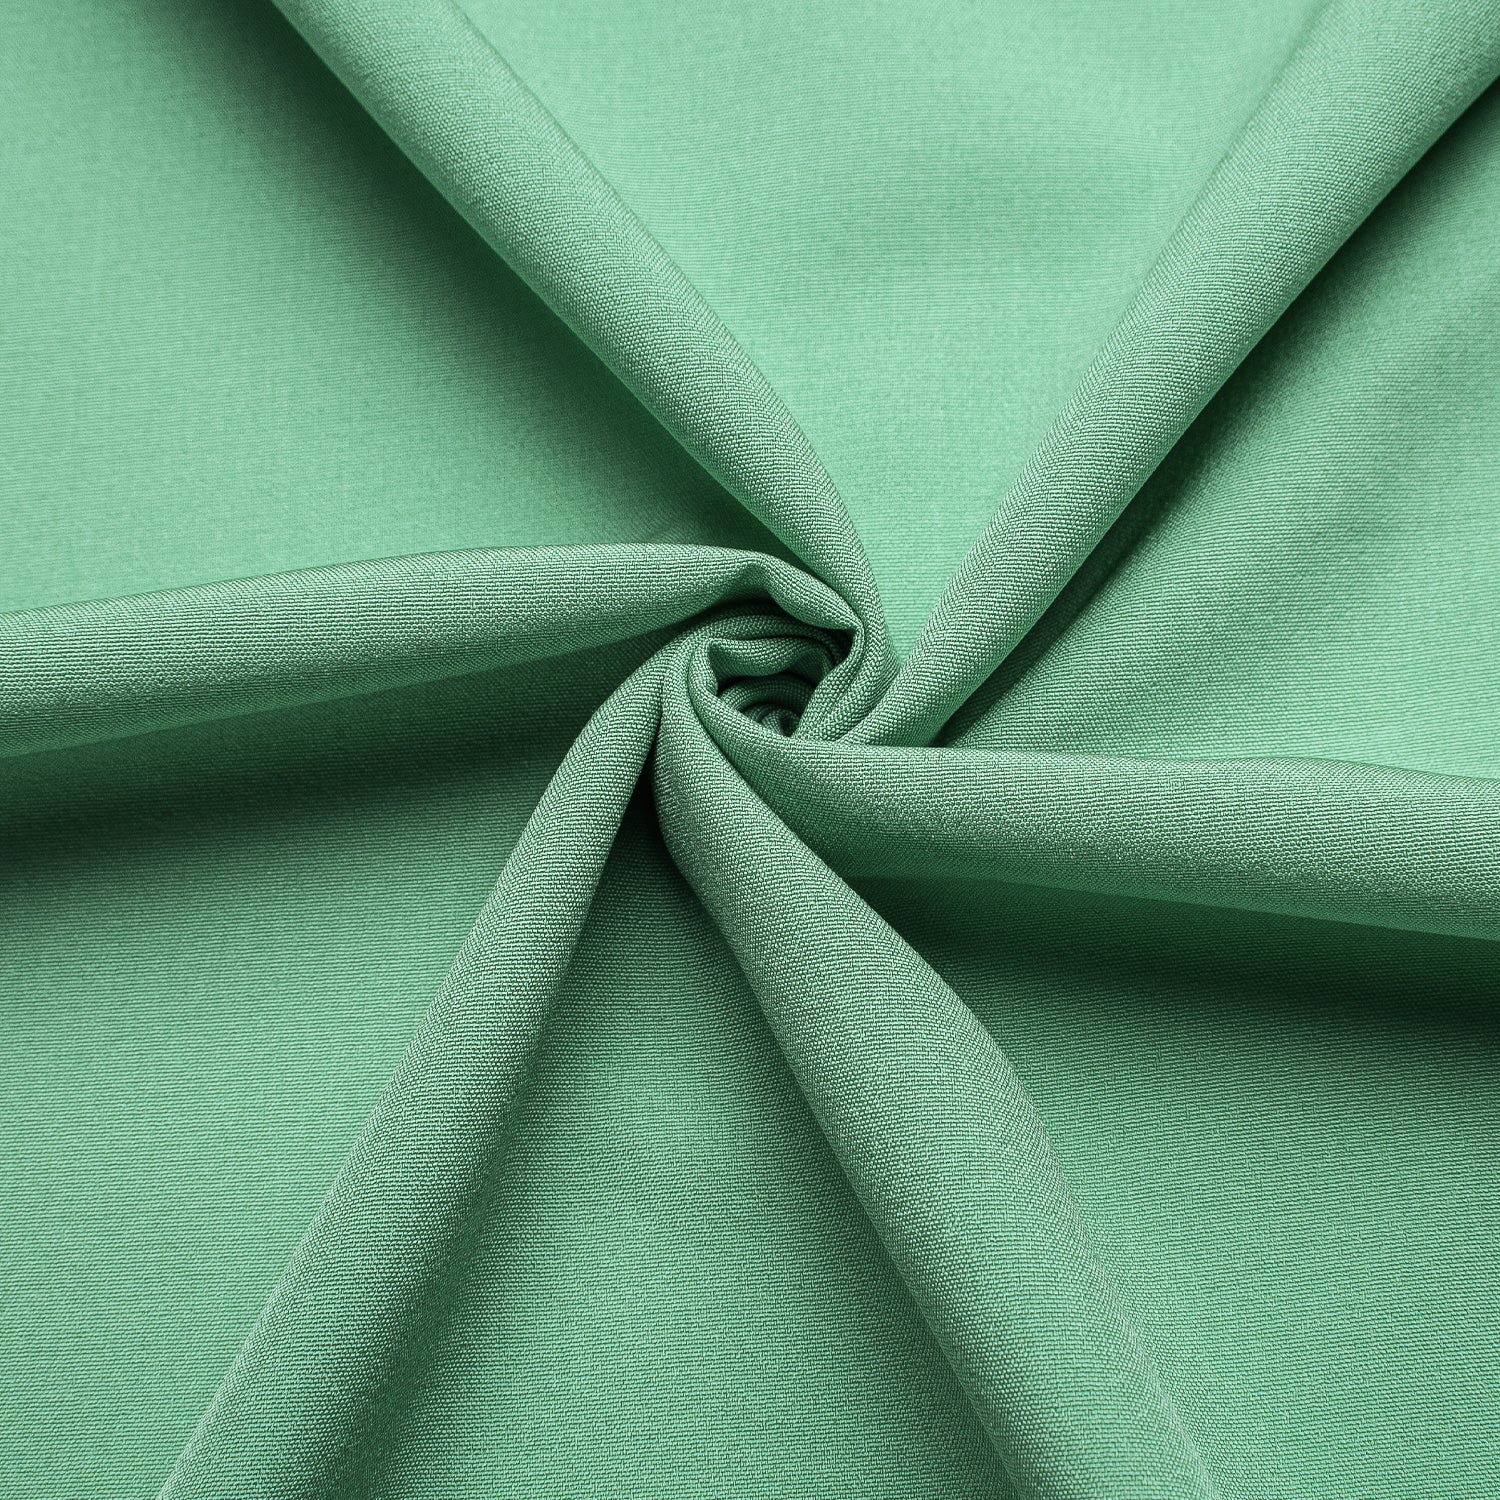 Mint Green Solid Silk Men's Short Sleeve Shirt